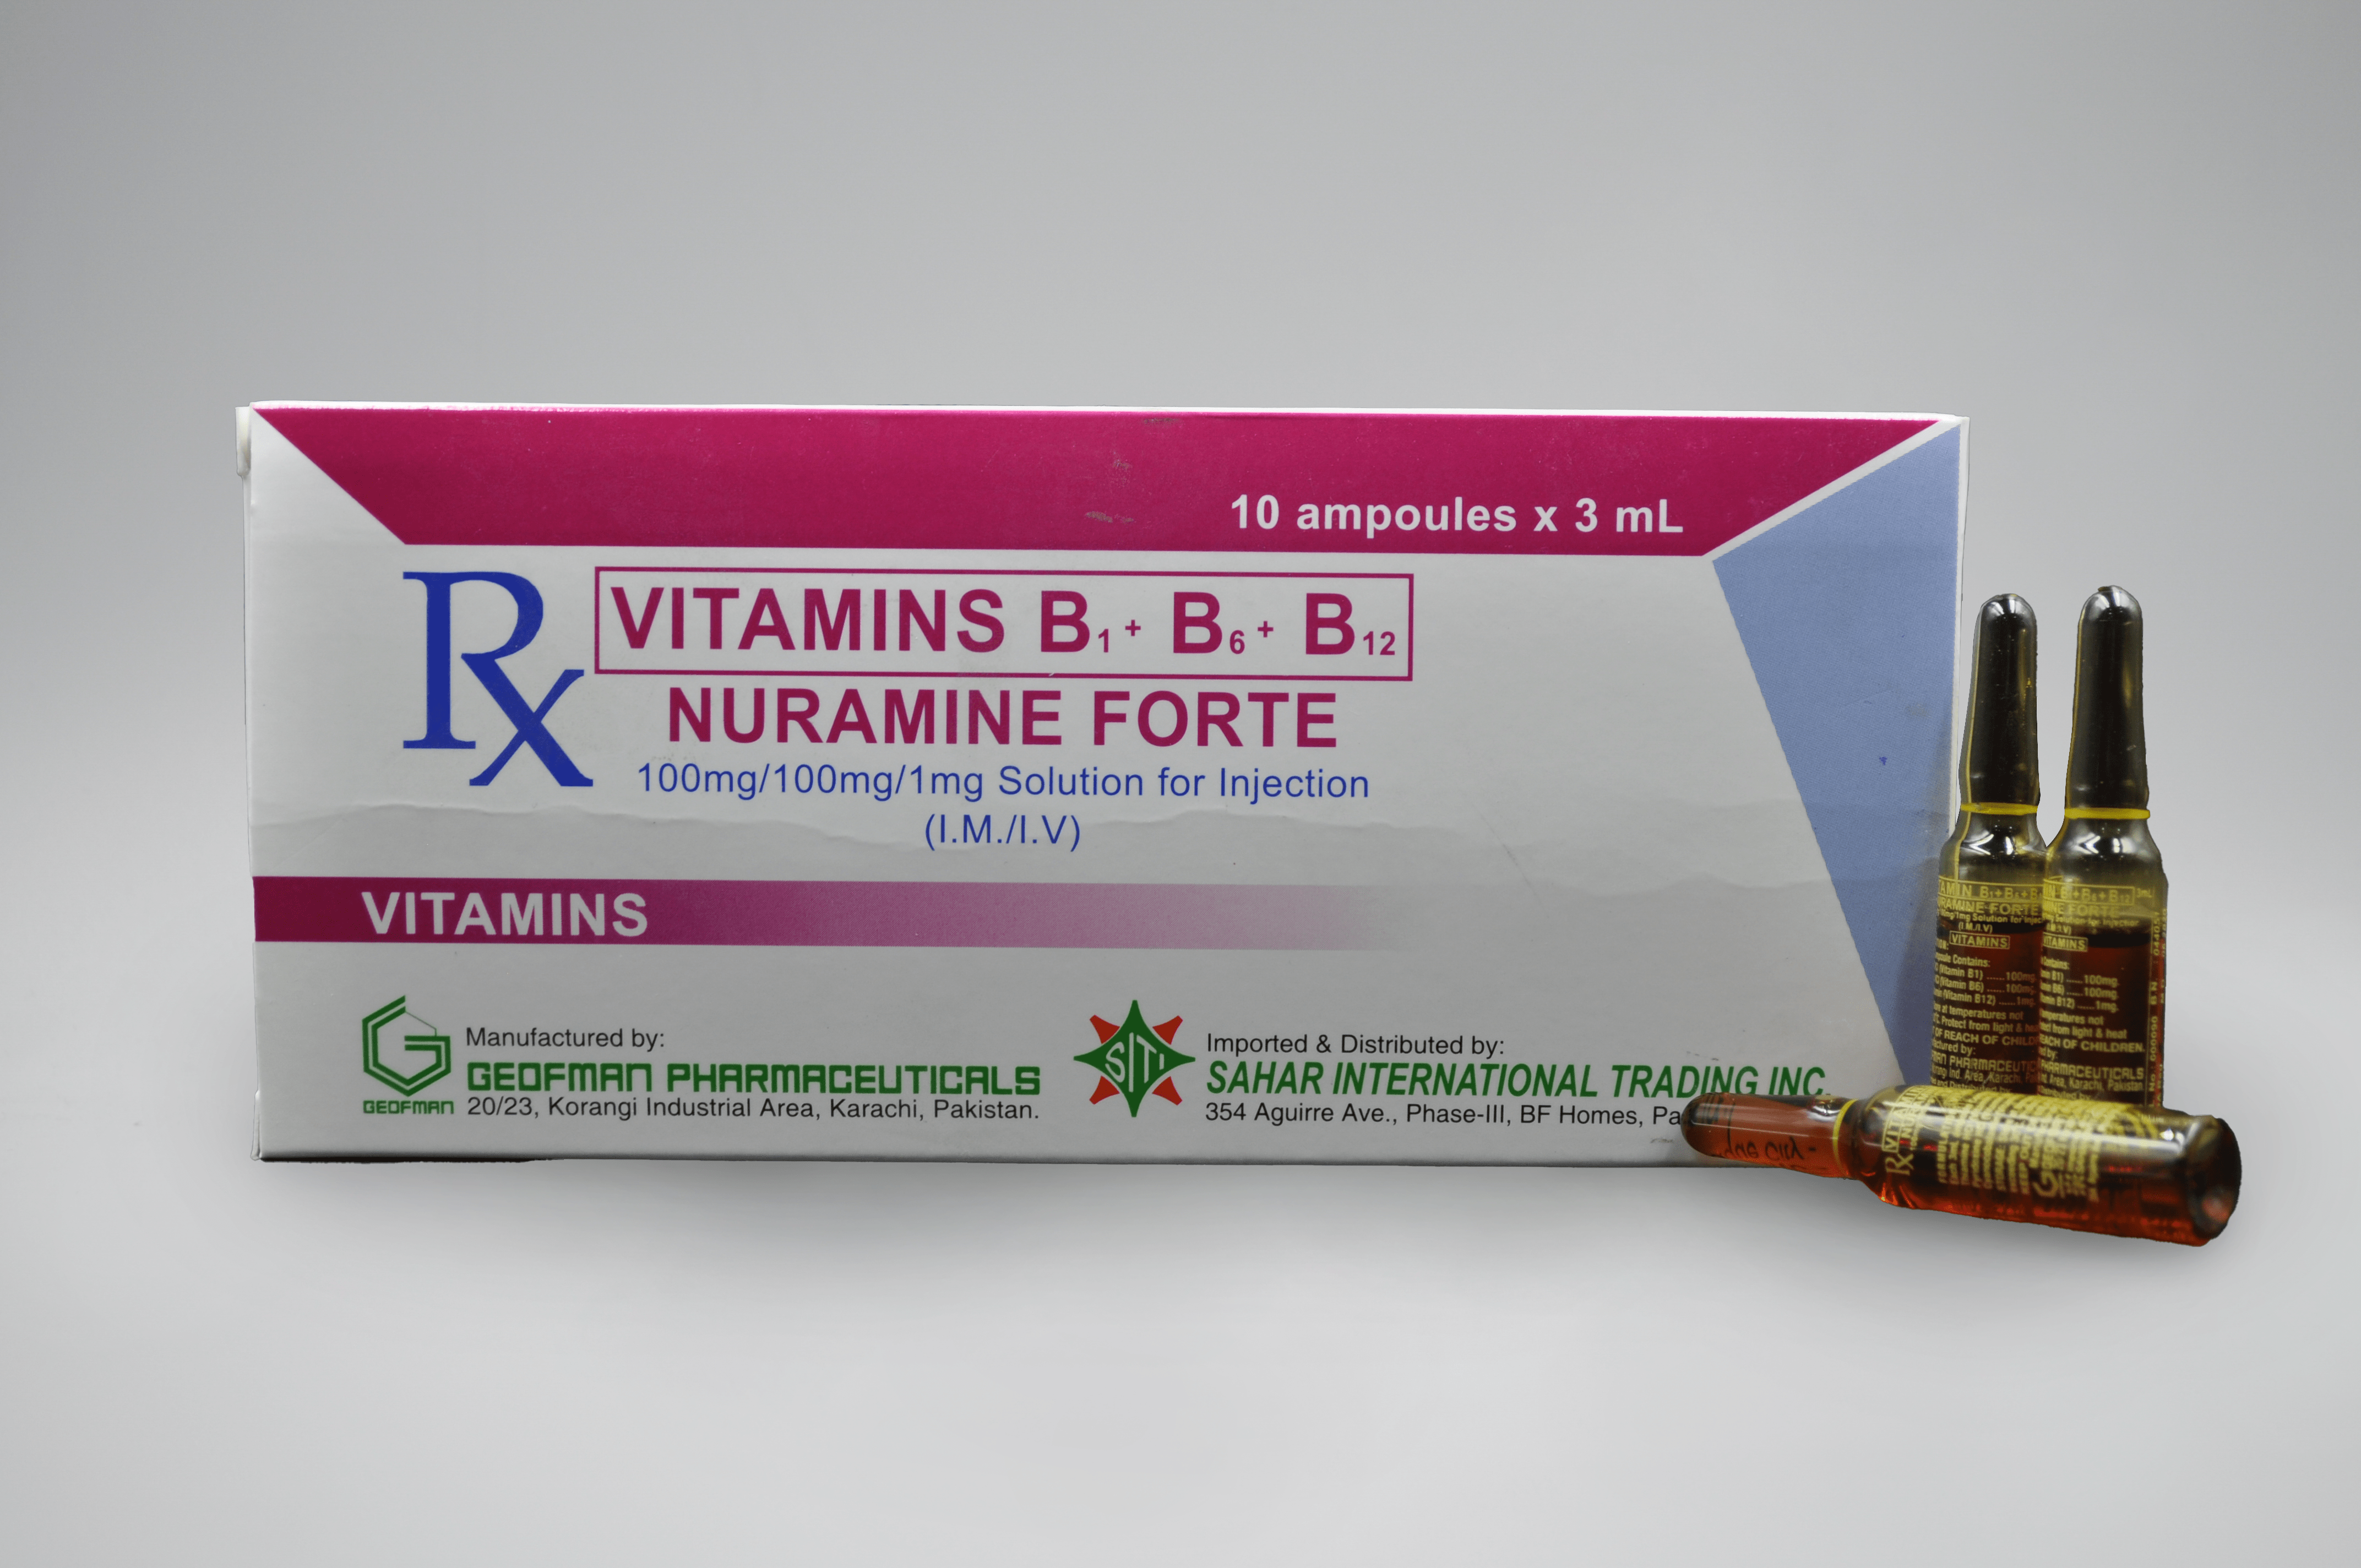 B-VITAMINS B1+B6+B12 (NURAMINE FORTE) IM/IV